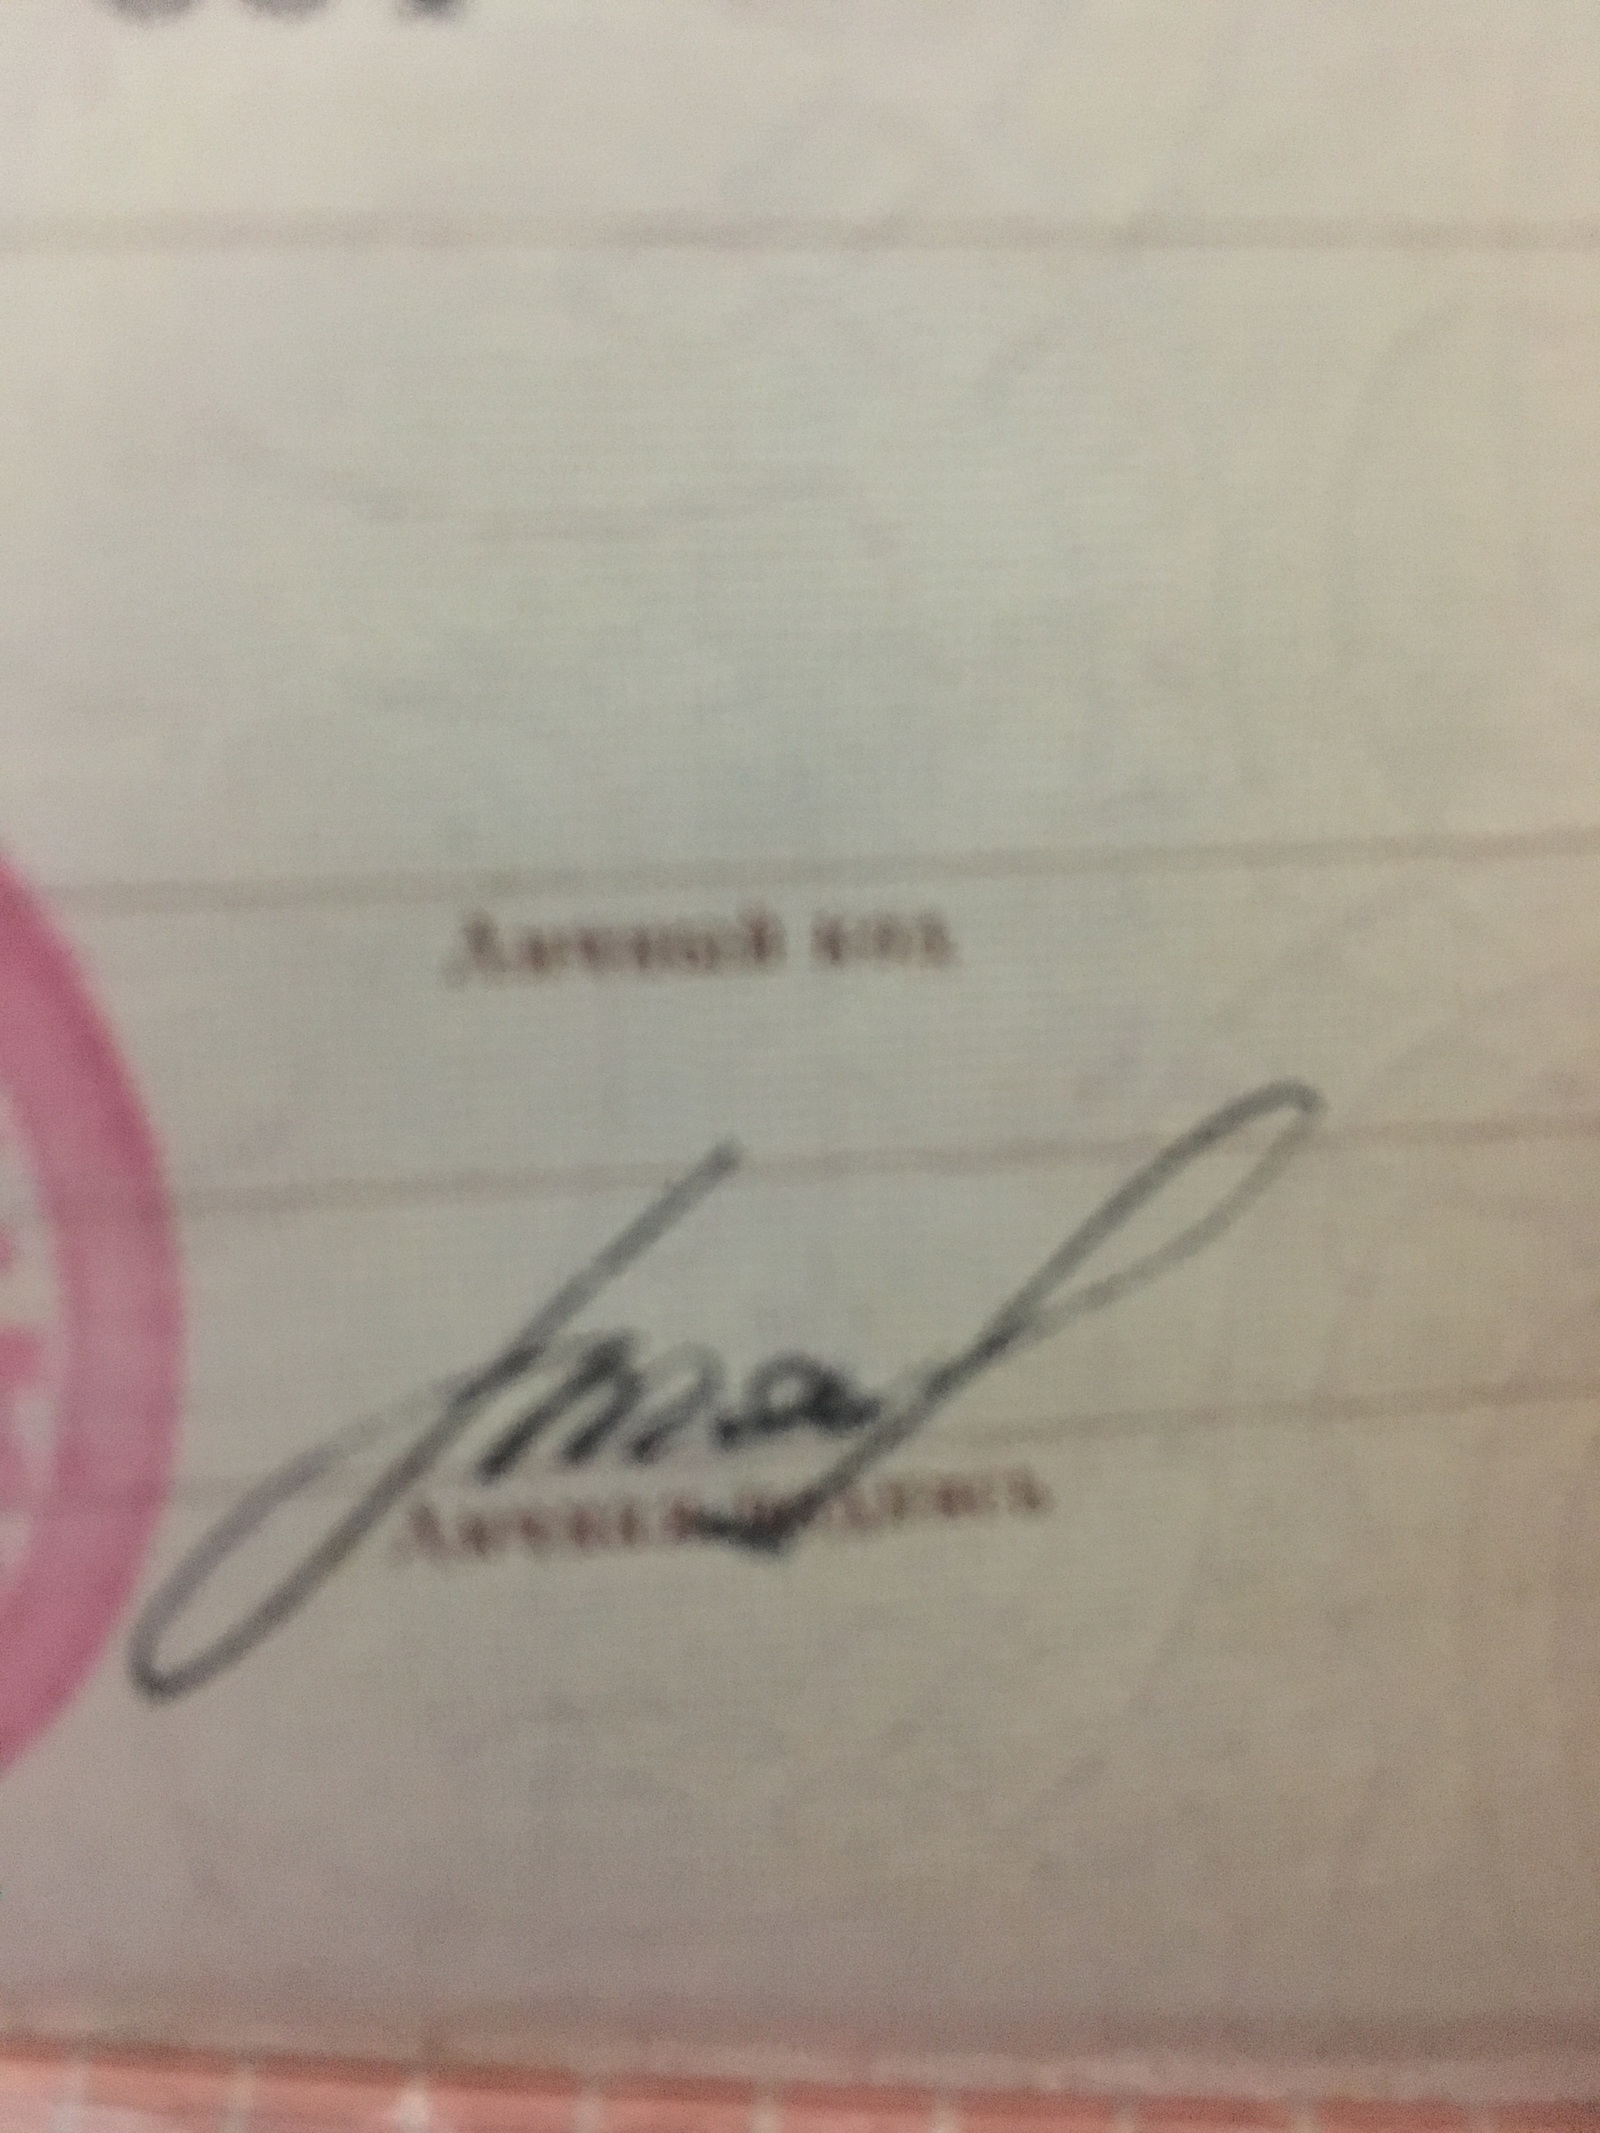 Подпись в паспорте